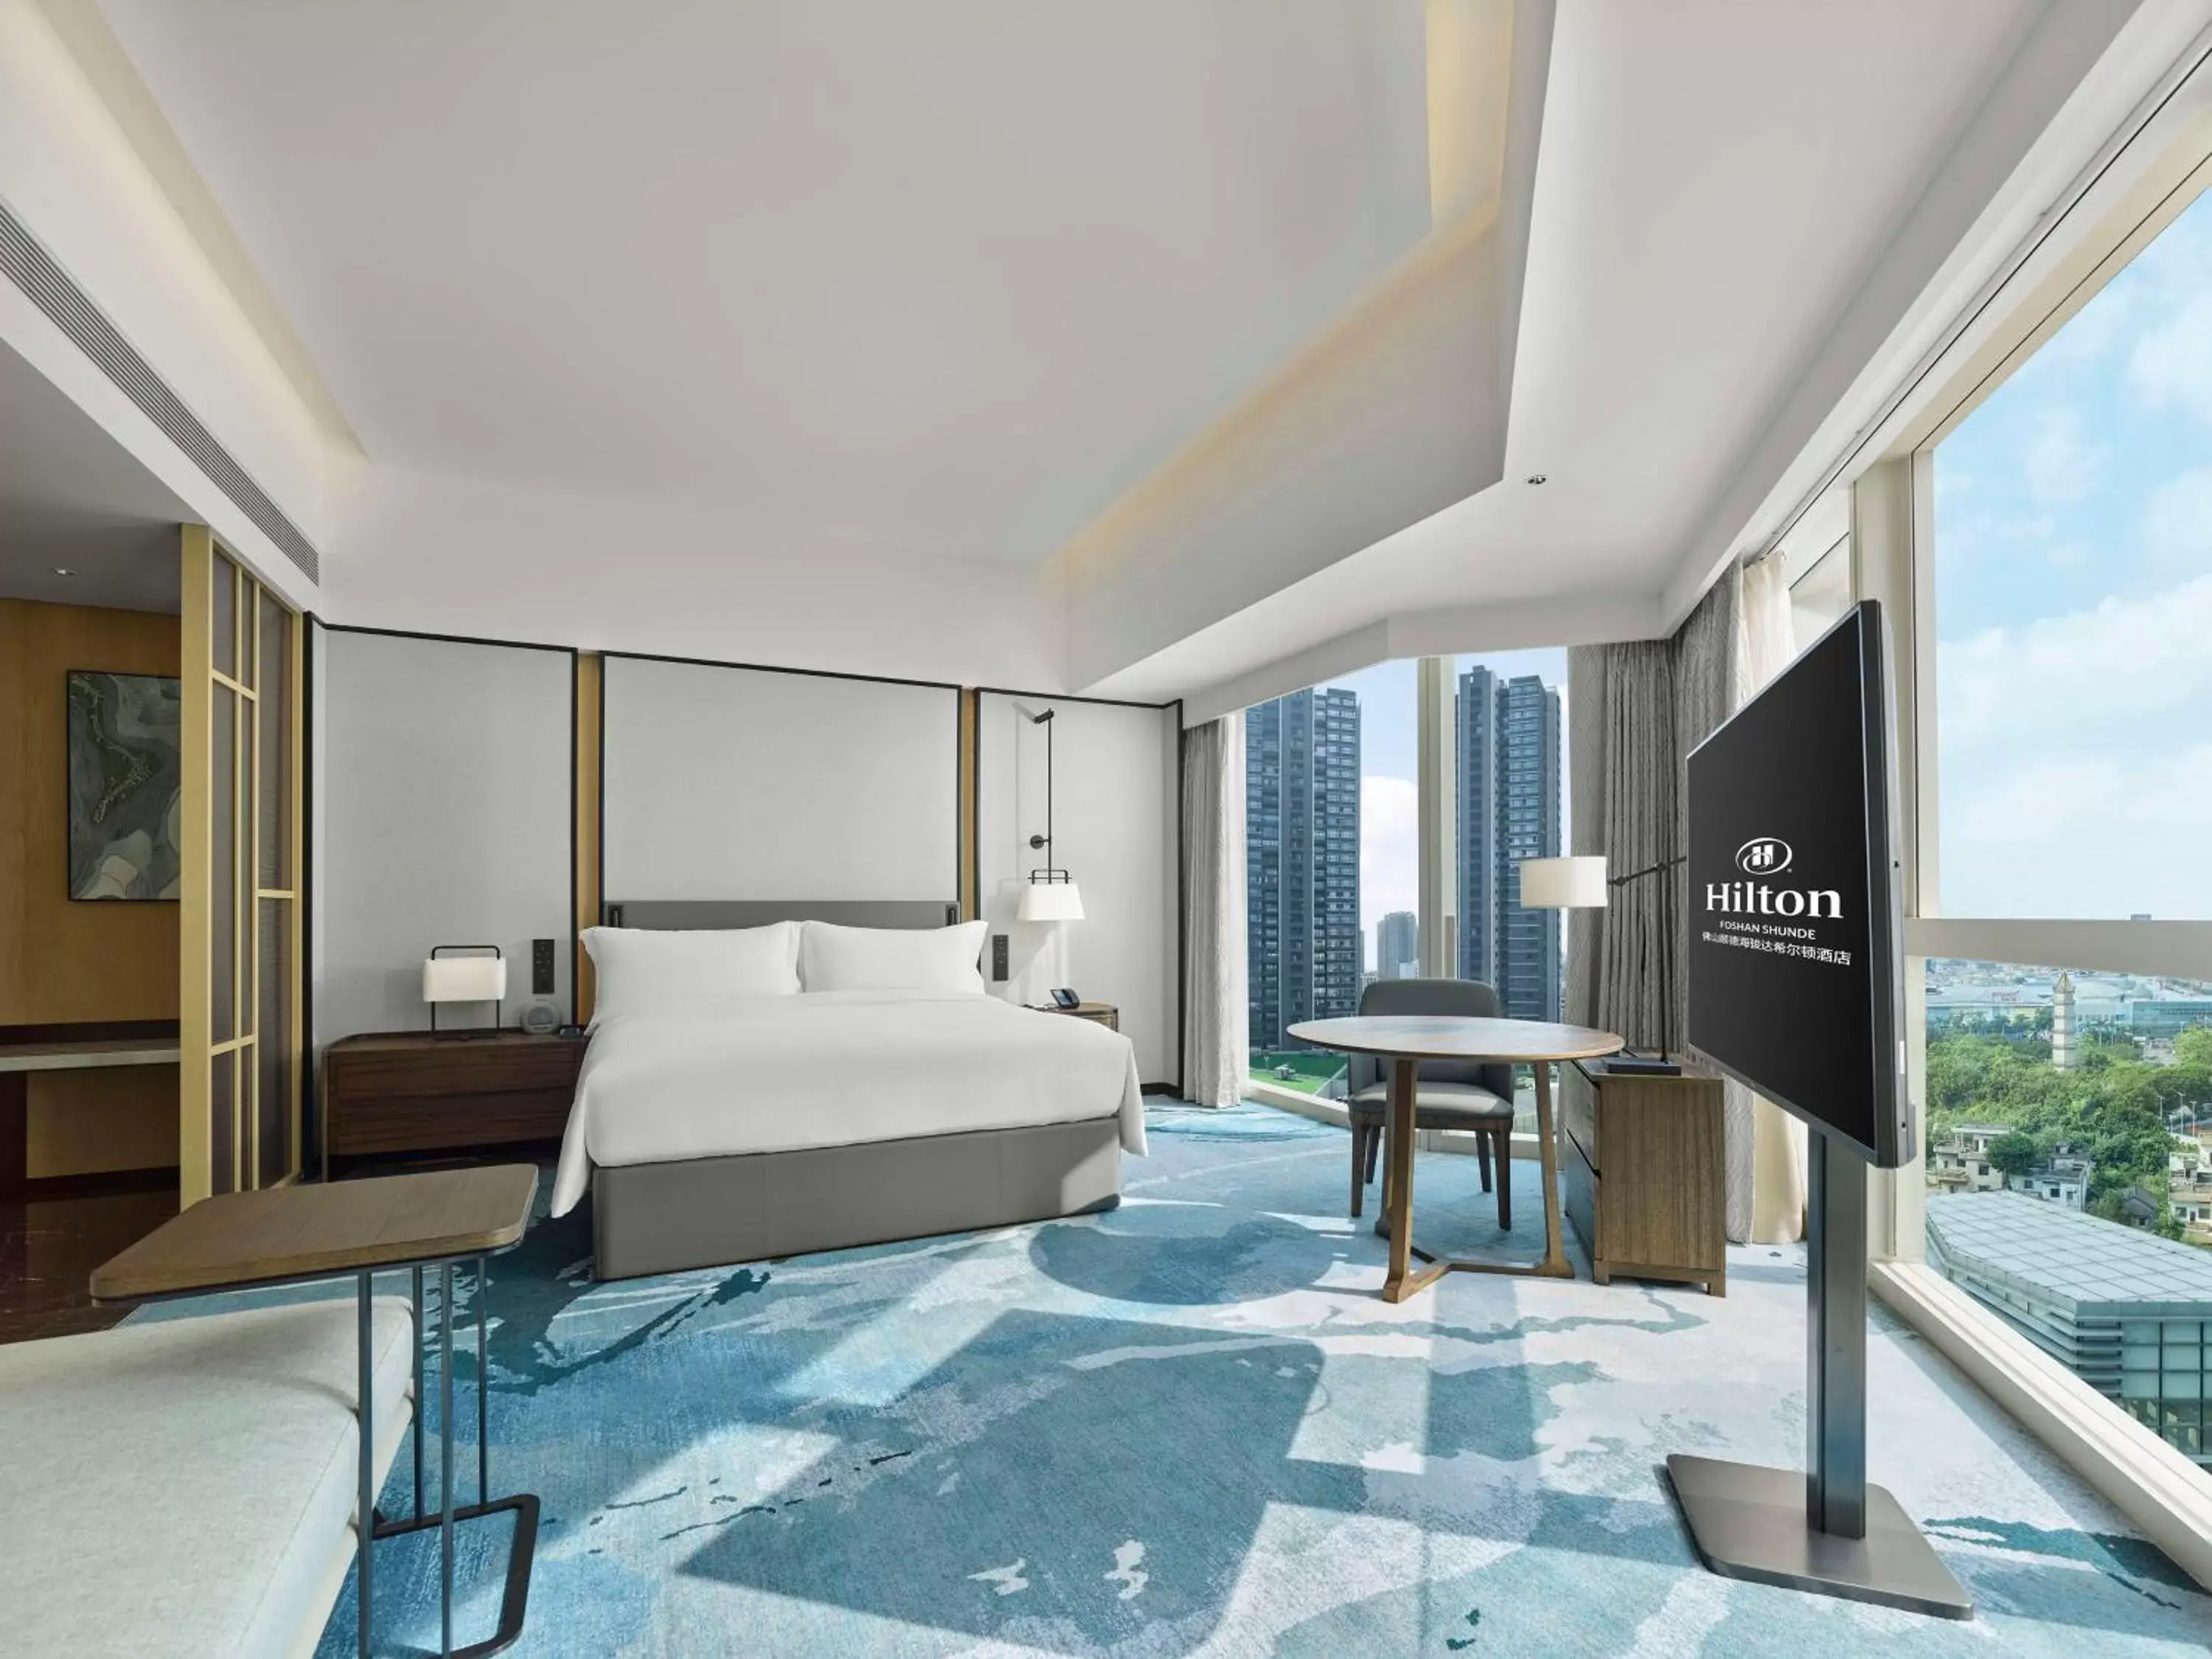 Bed in Hilton Foshan Shunde